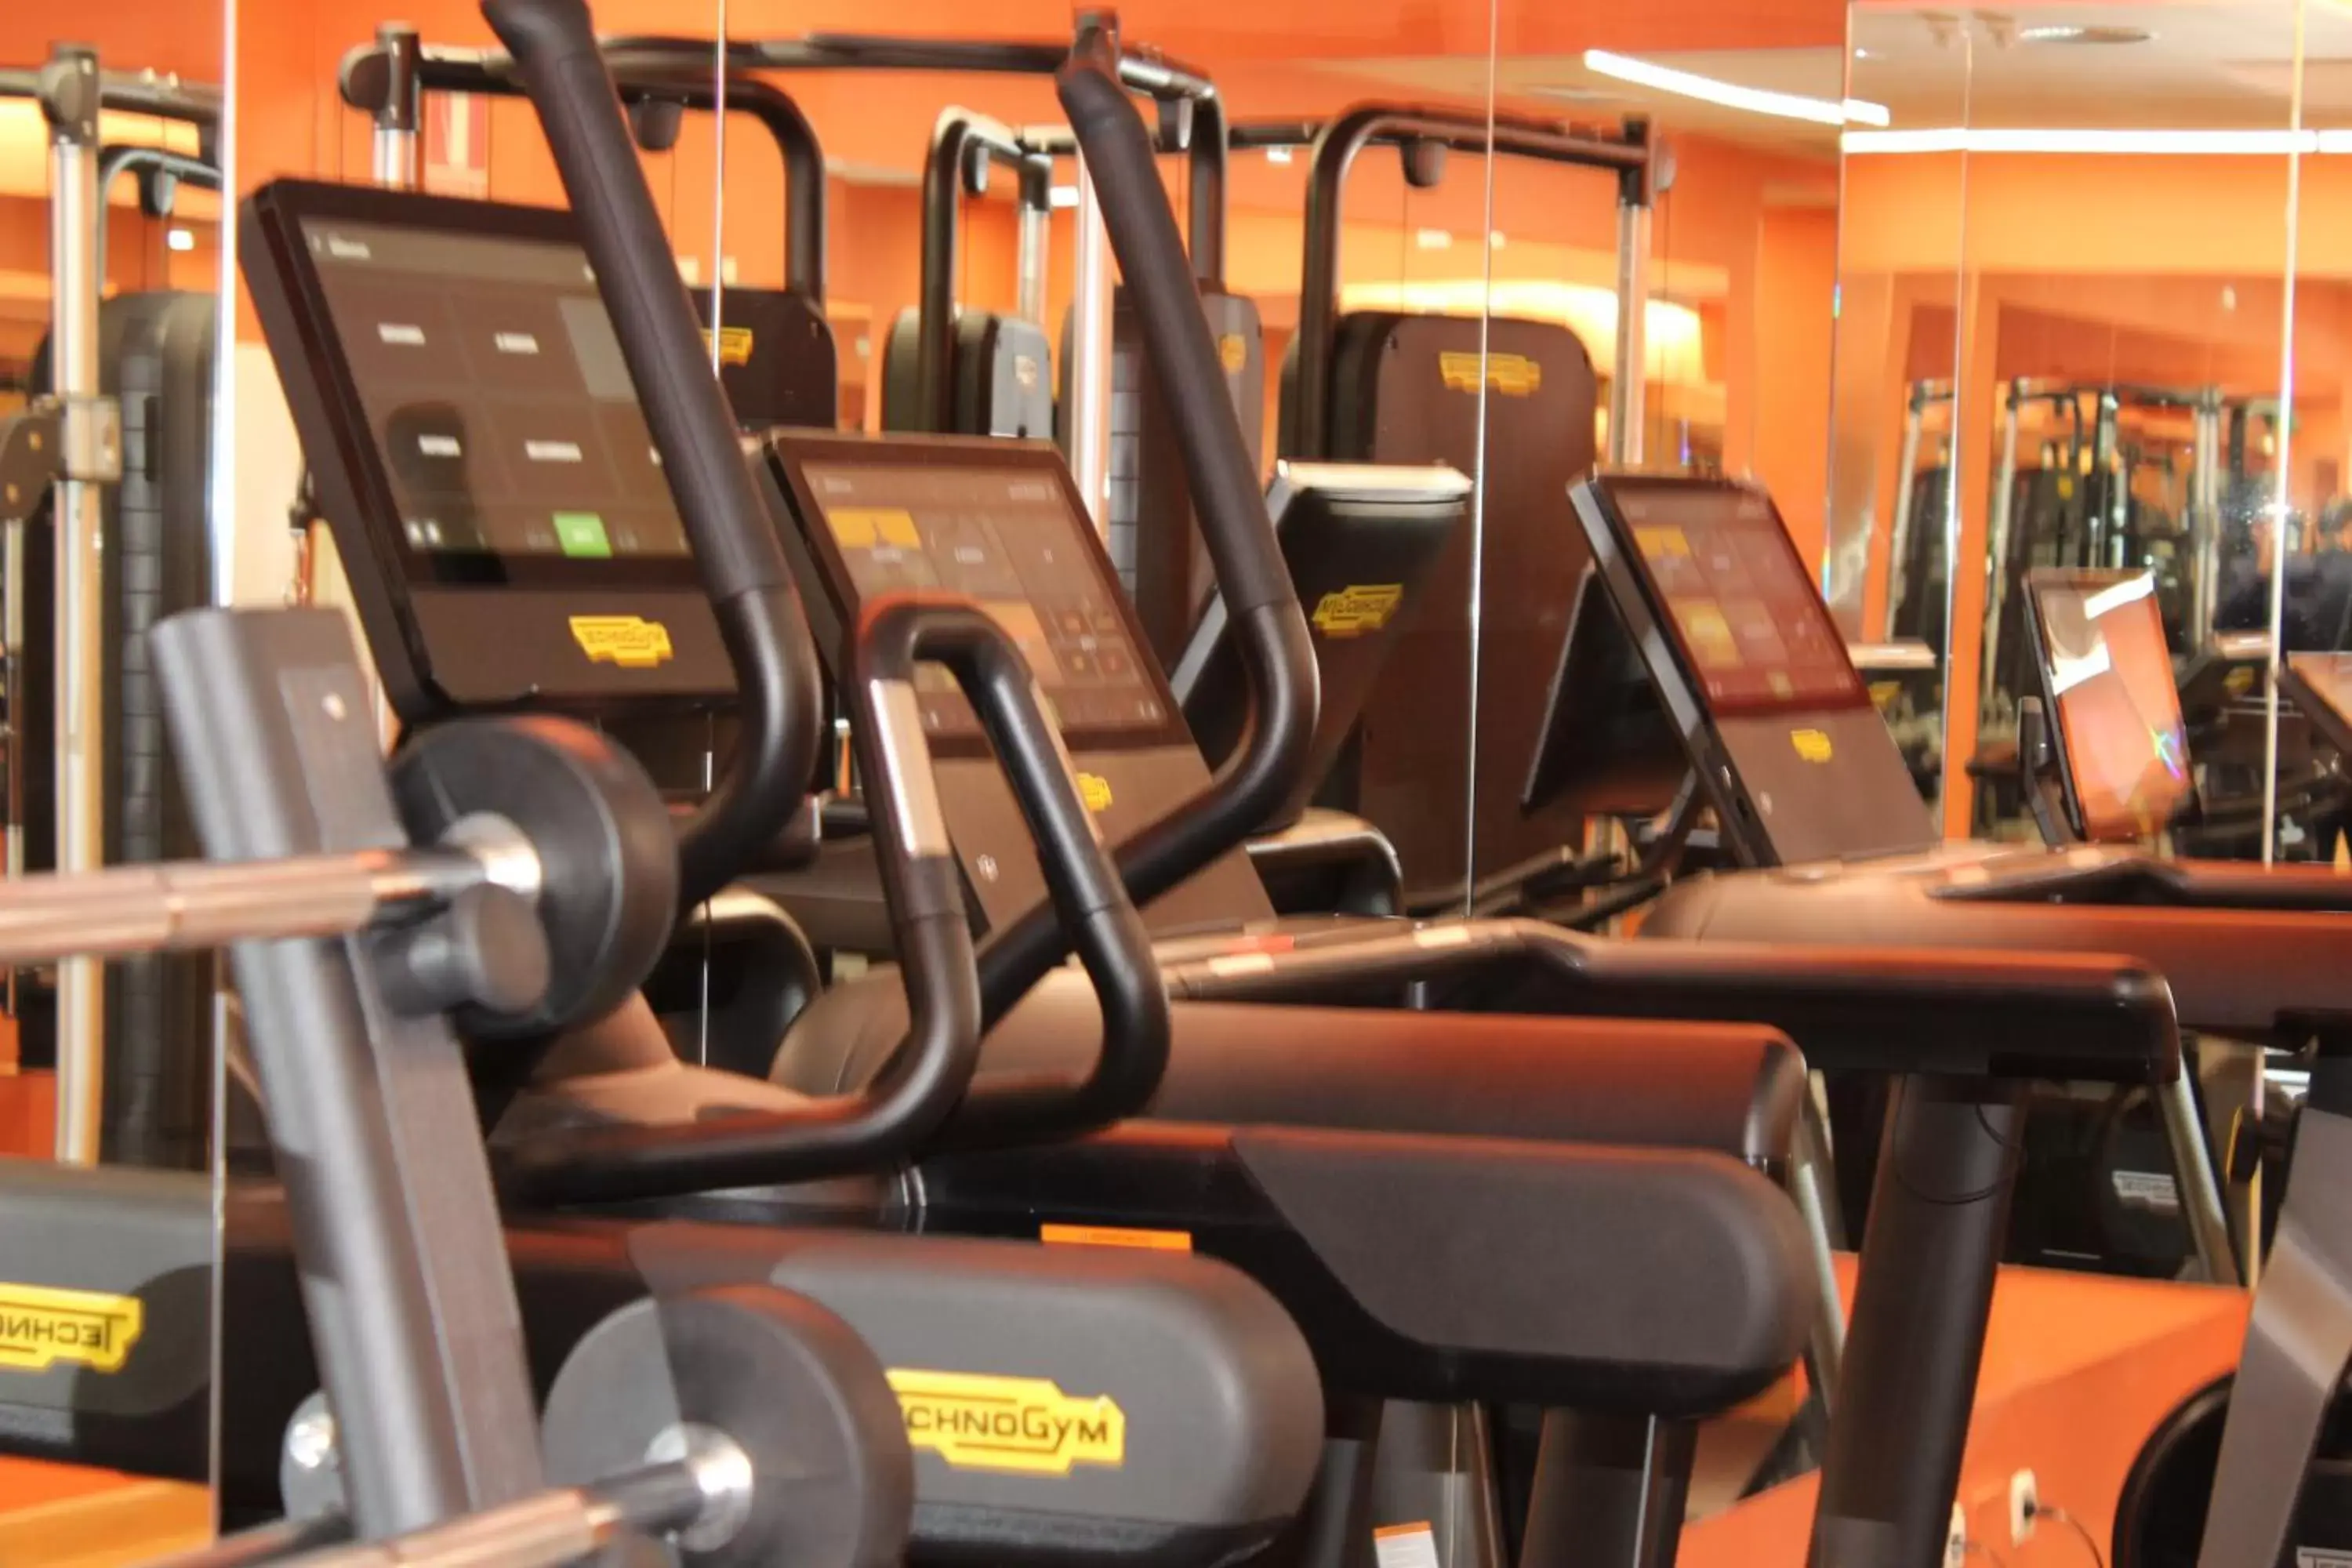 Fitness centre/facilities, Fitness Center/Facilities in Hotel Villamadrid